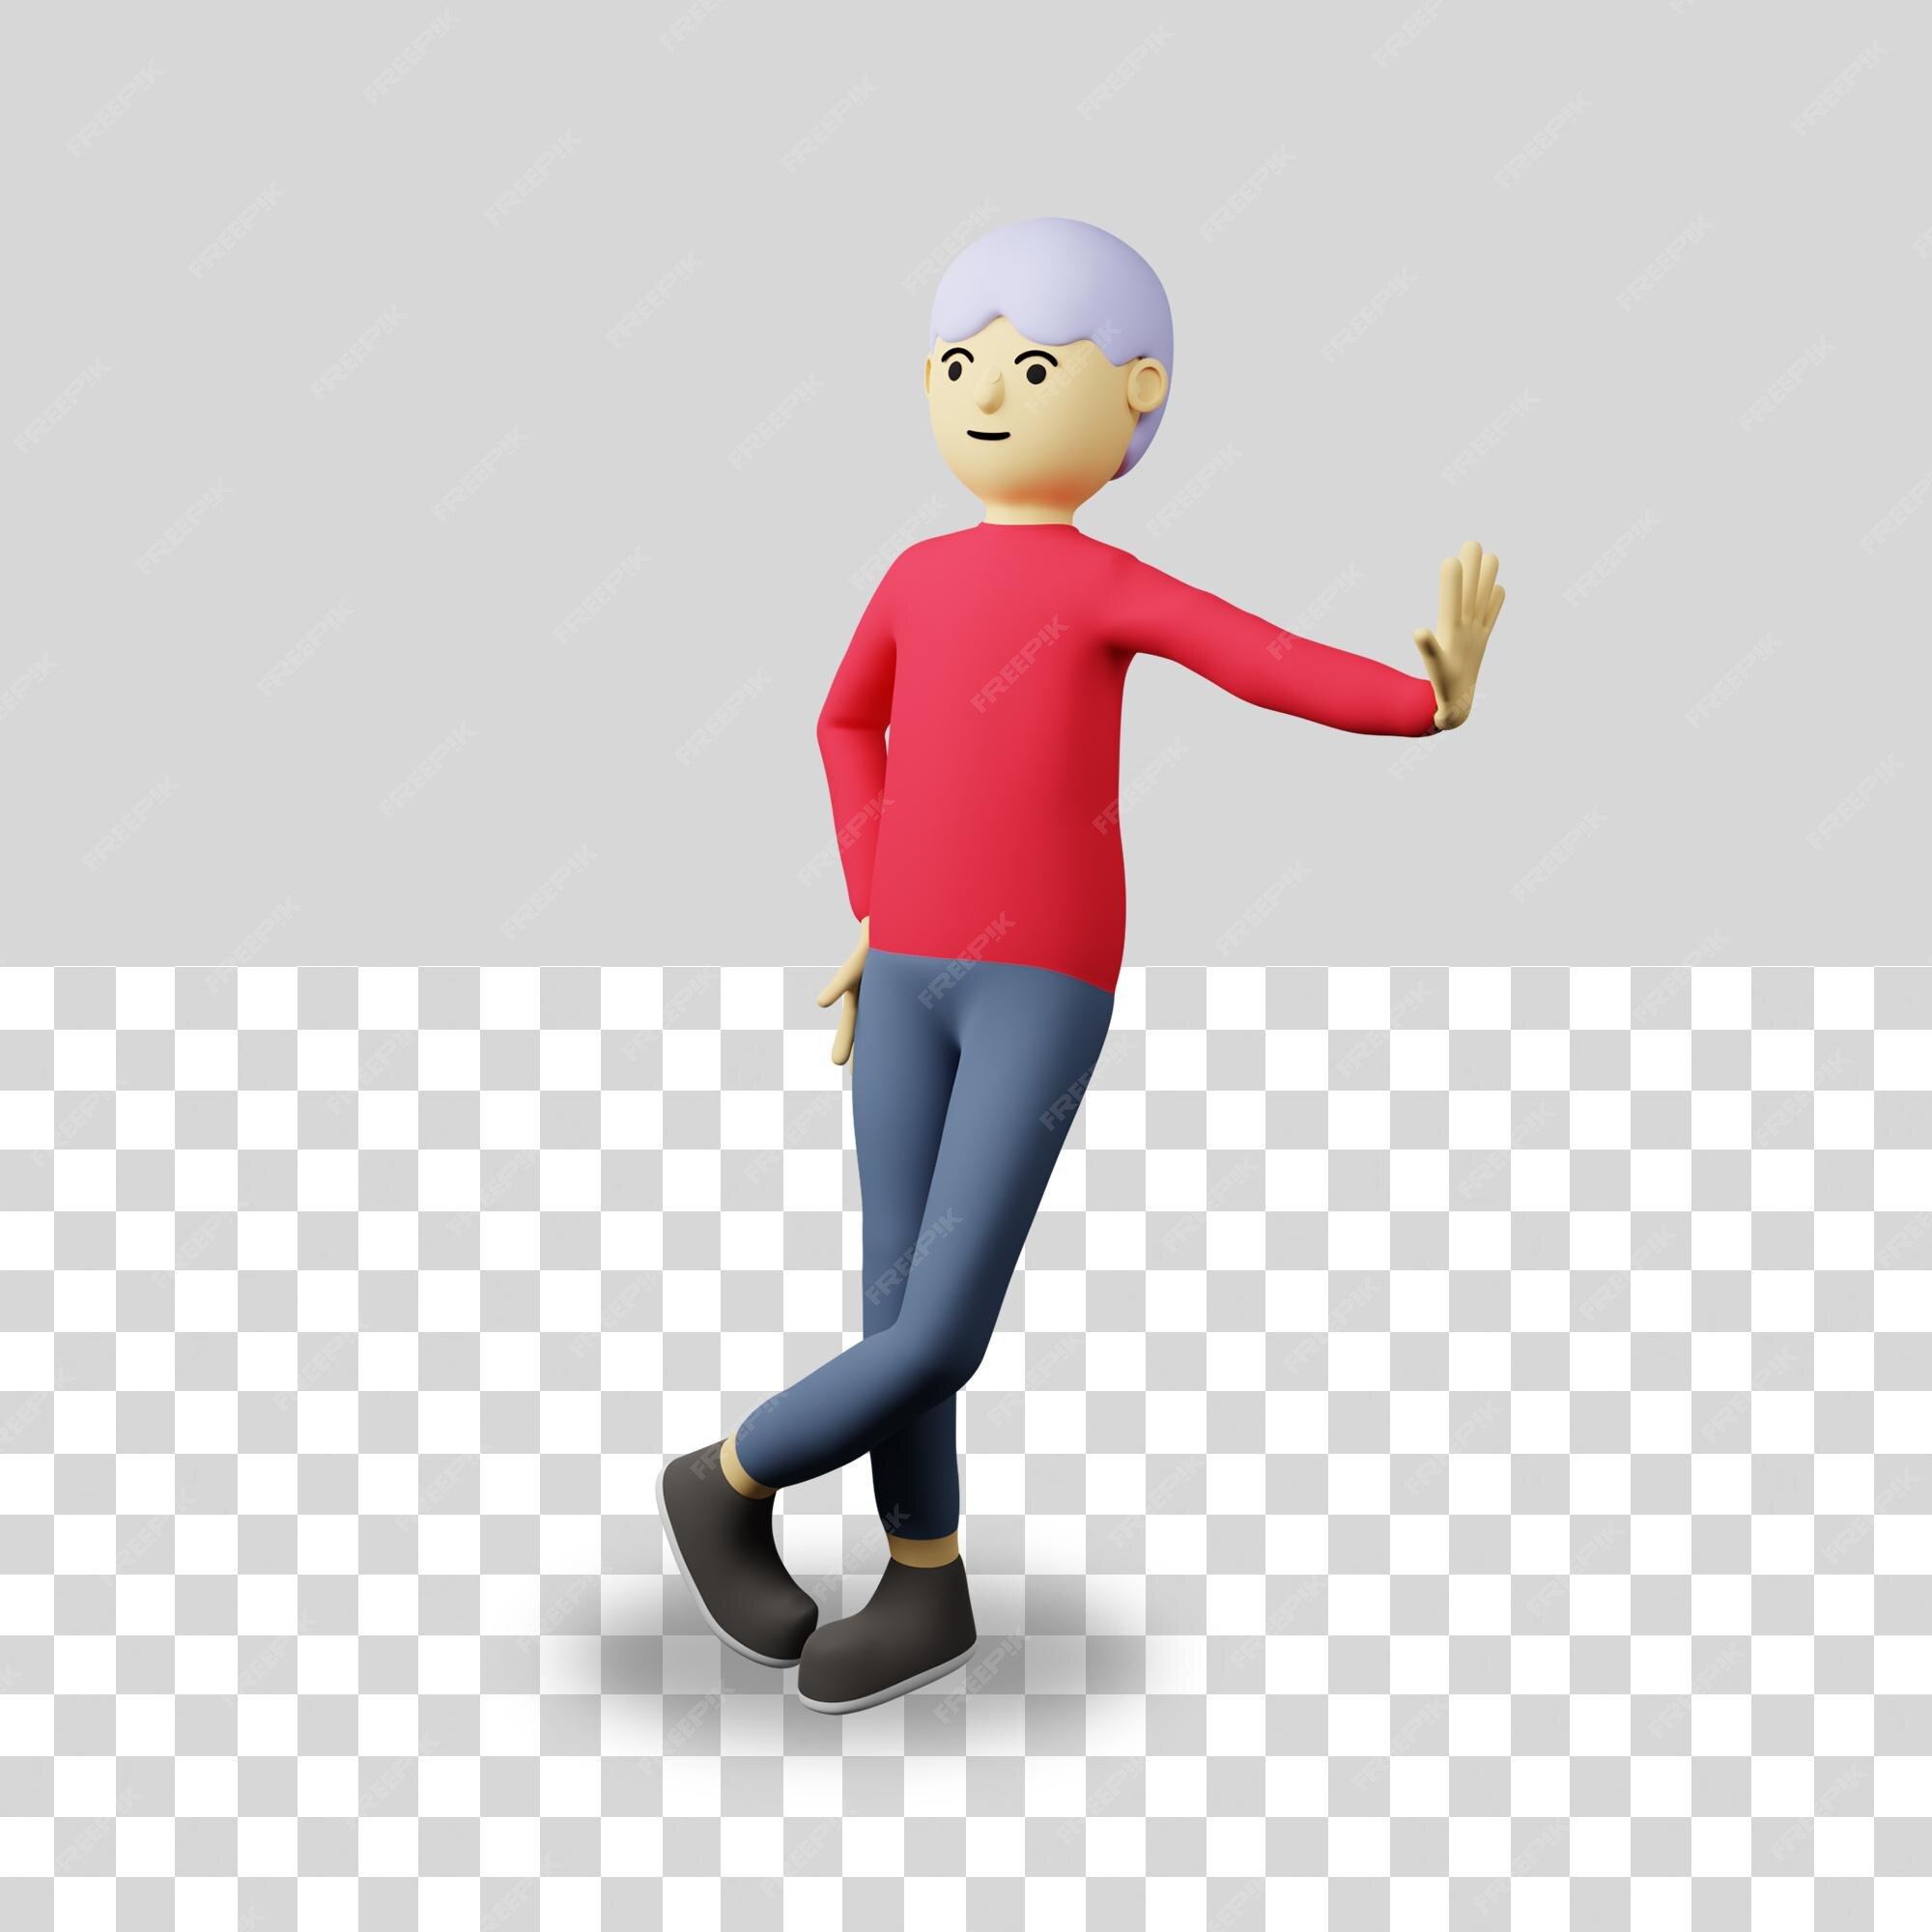 Hãy thử tưởng tượng sự độc đáo của hình ảnh avatar của bạn với công nghệ 3D mới từ Roblox. Giờ đây, bạn có thể tạo ra những avatar độc đáo và chân thật hơn bao giờ hết. Nhấn vào hình ảnh để khám phá thêm!